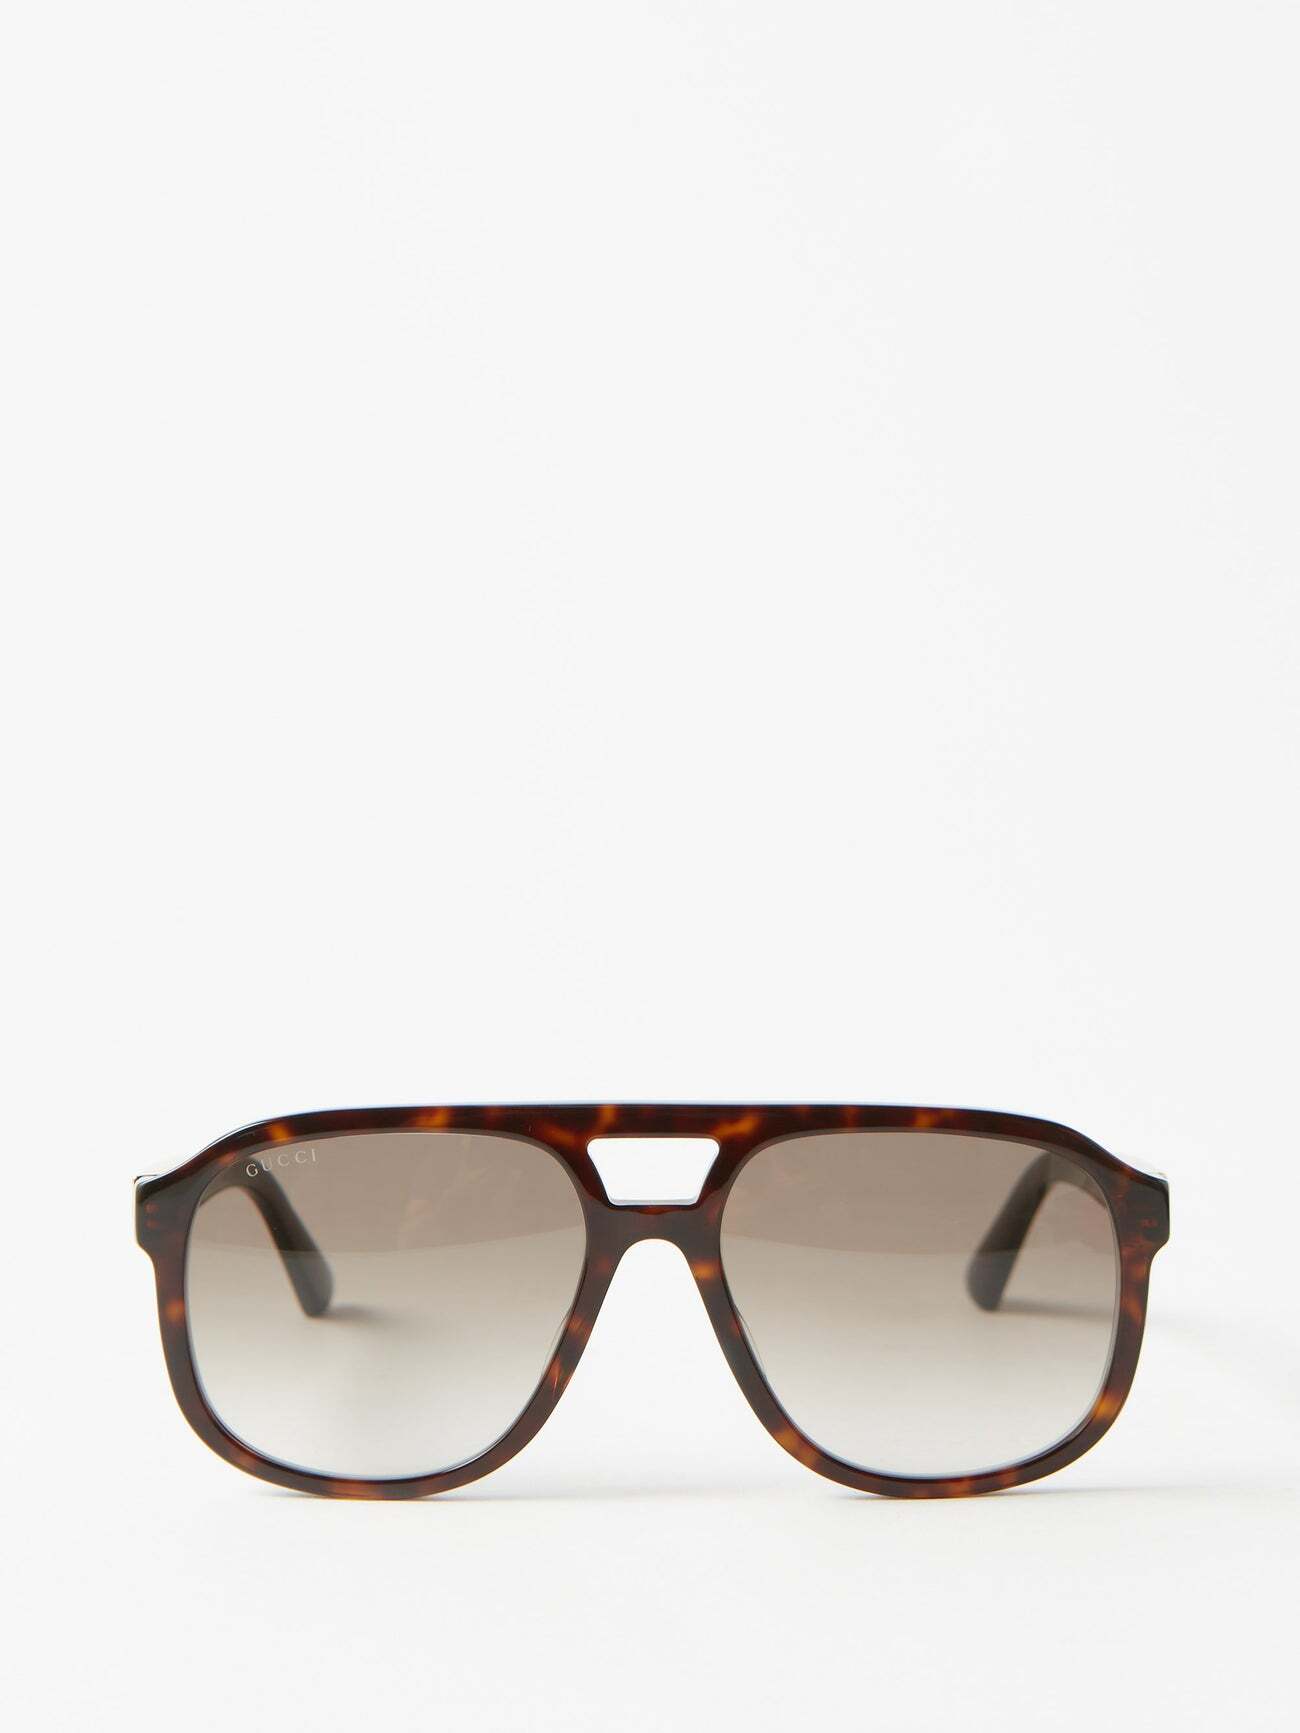 Gucci Eyewear - Tortoiseshell-acetate Aviator Sunglasses - Womens - Brown